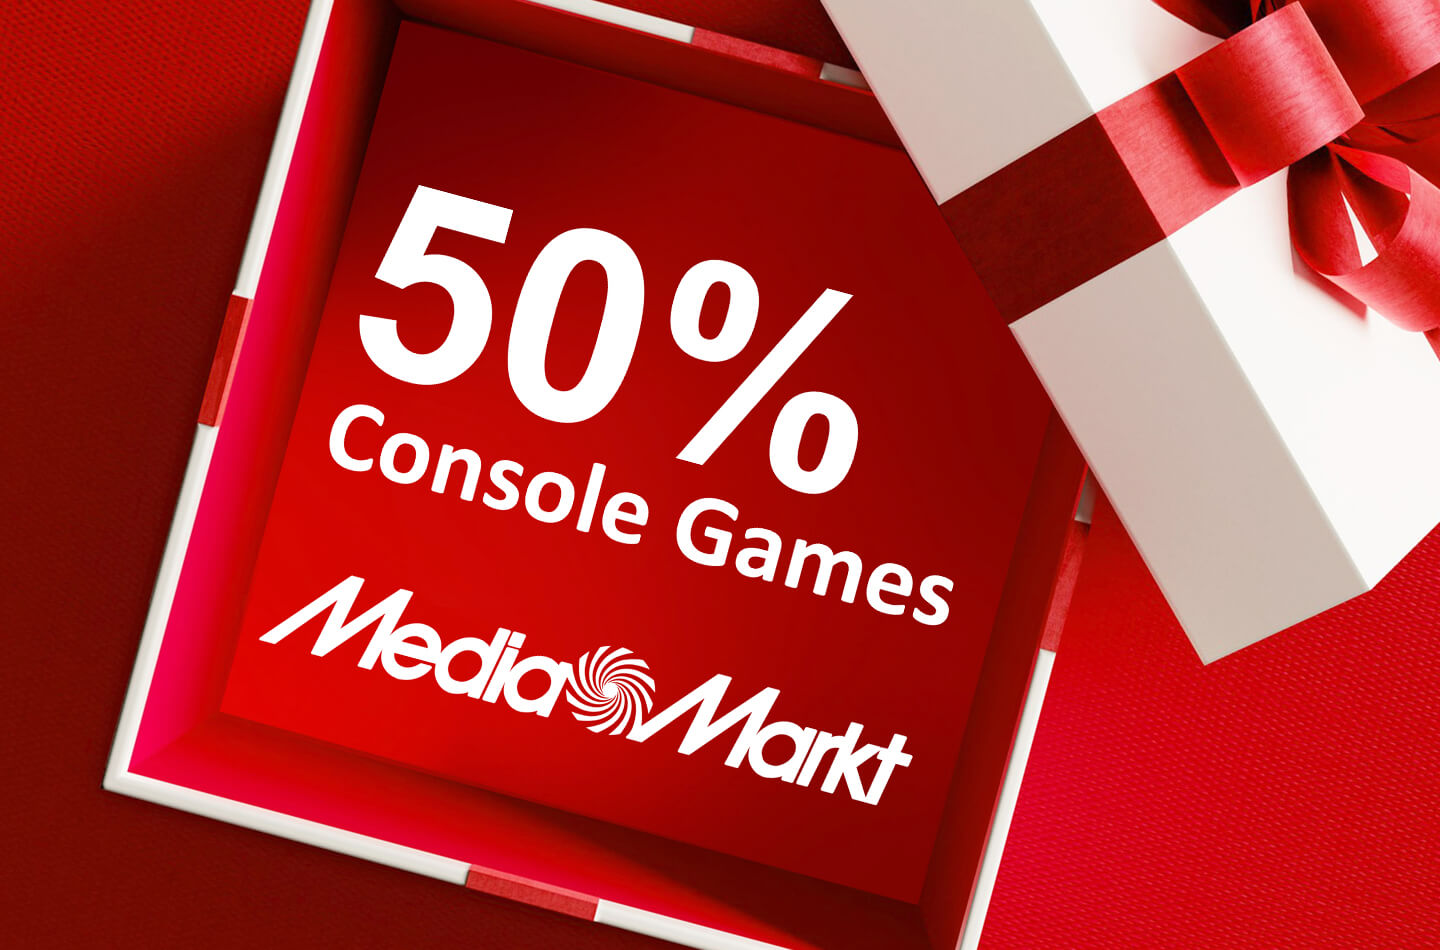 onderhoud Circulaire prijs MediaMarkt lijkt hoge korting te geven op console games | LetsGoDigital